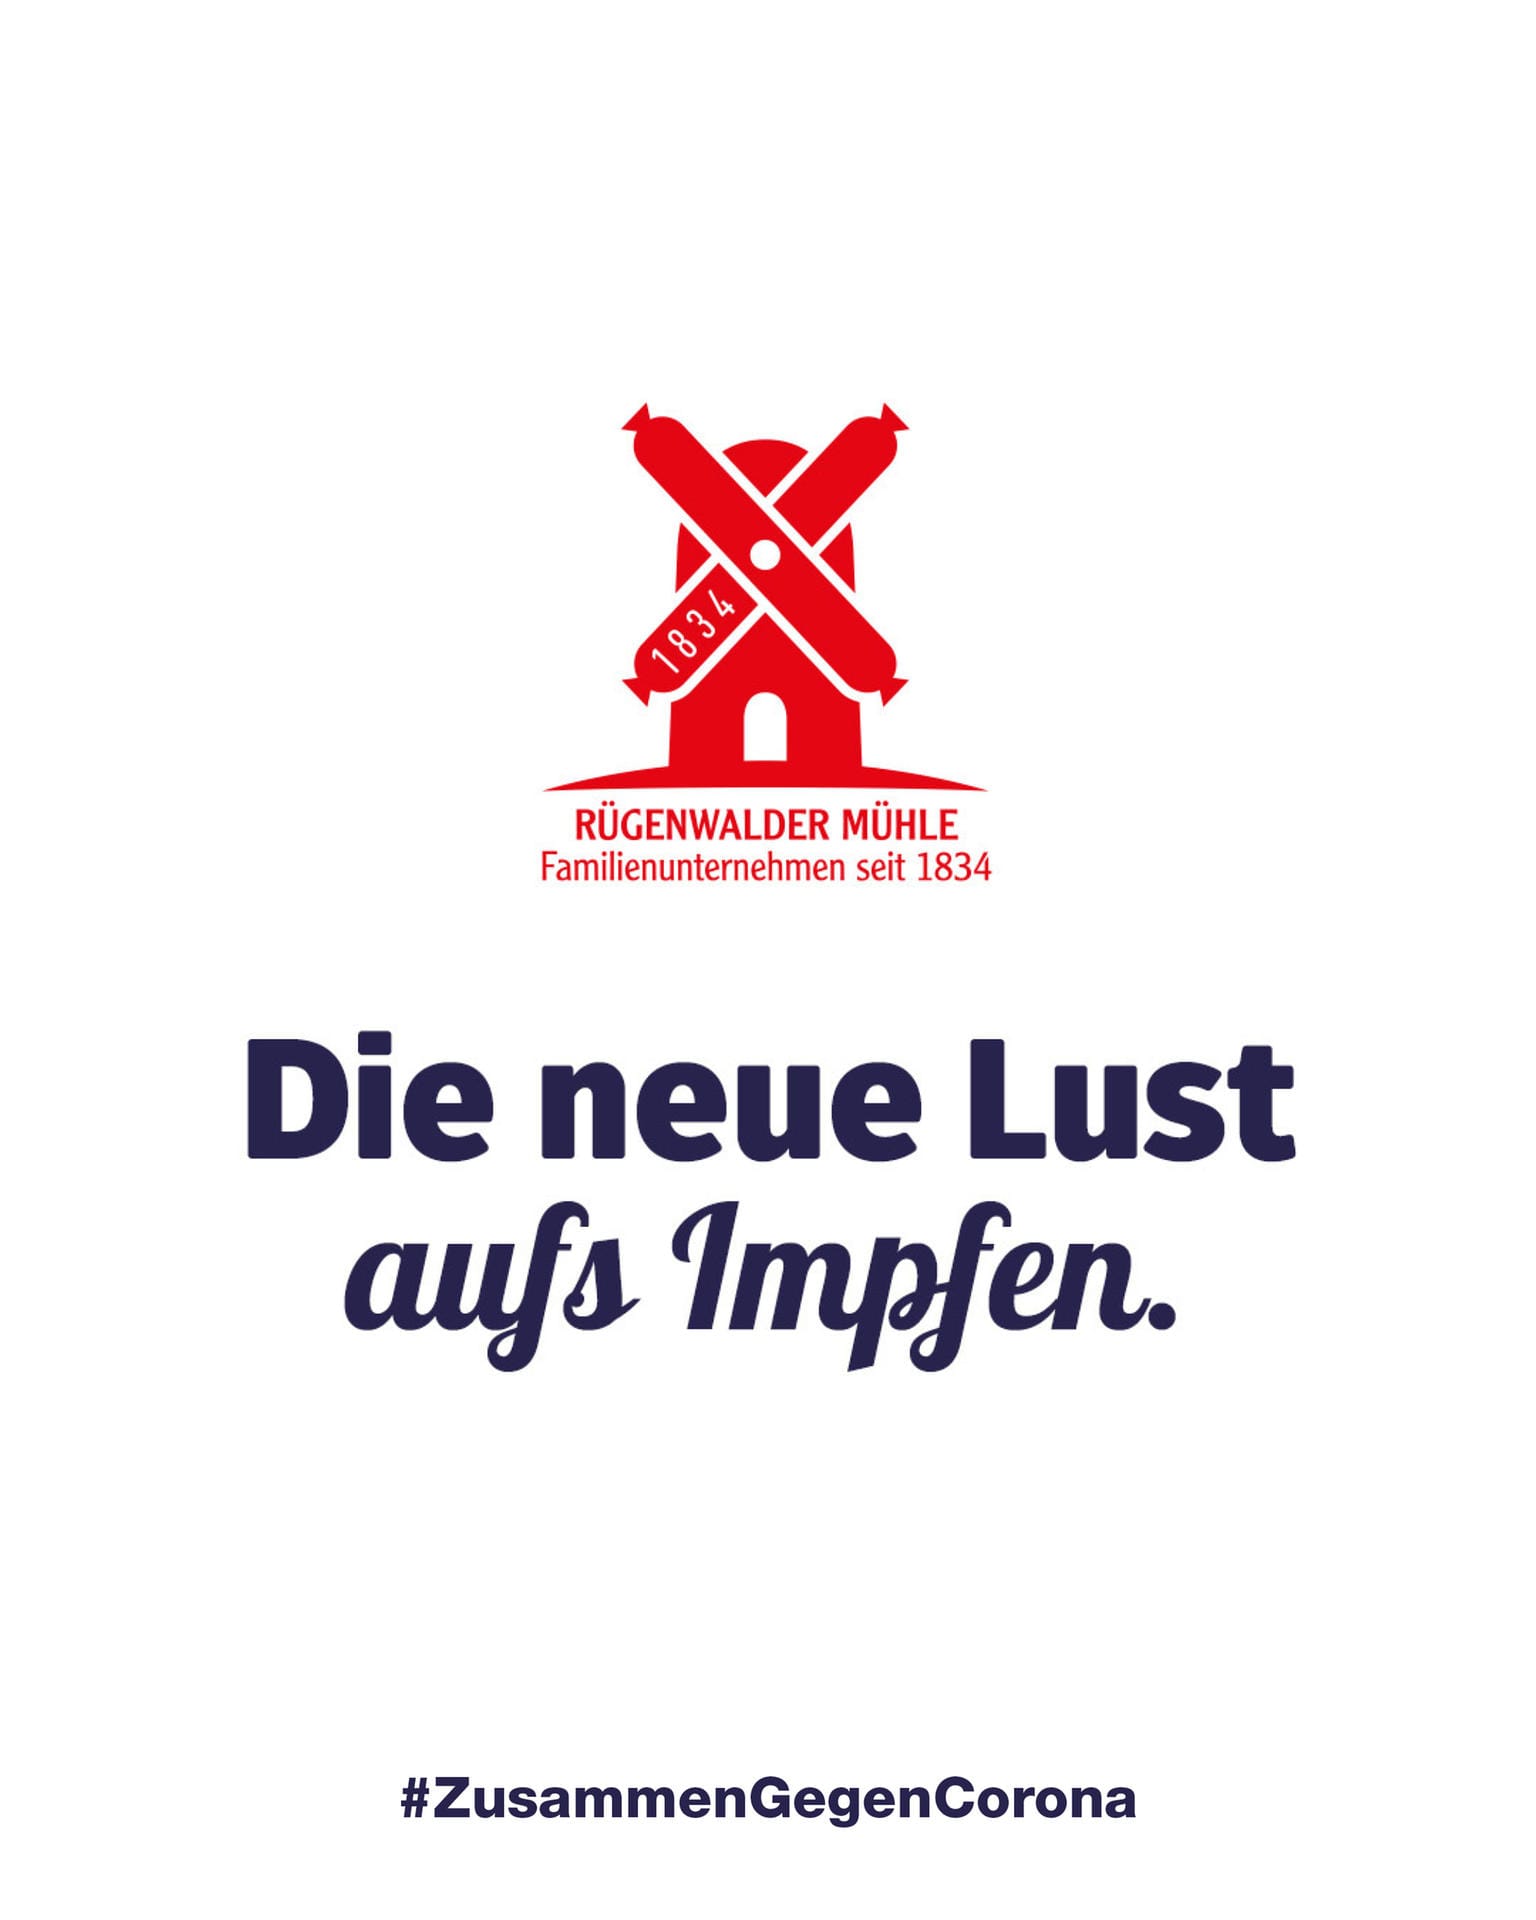 Rügenwalder wirbt mit dem Spruch "Die neue Lust aufs Impfen".